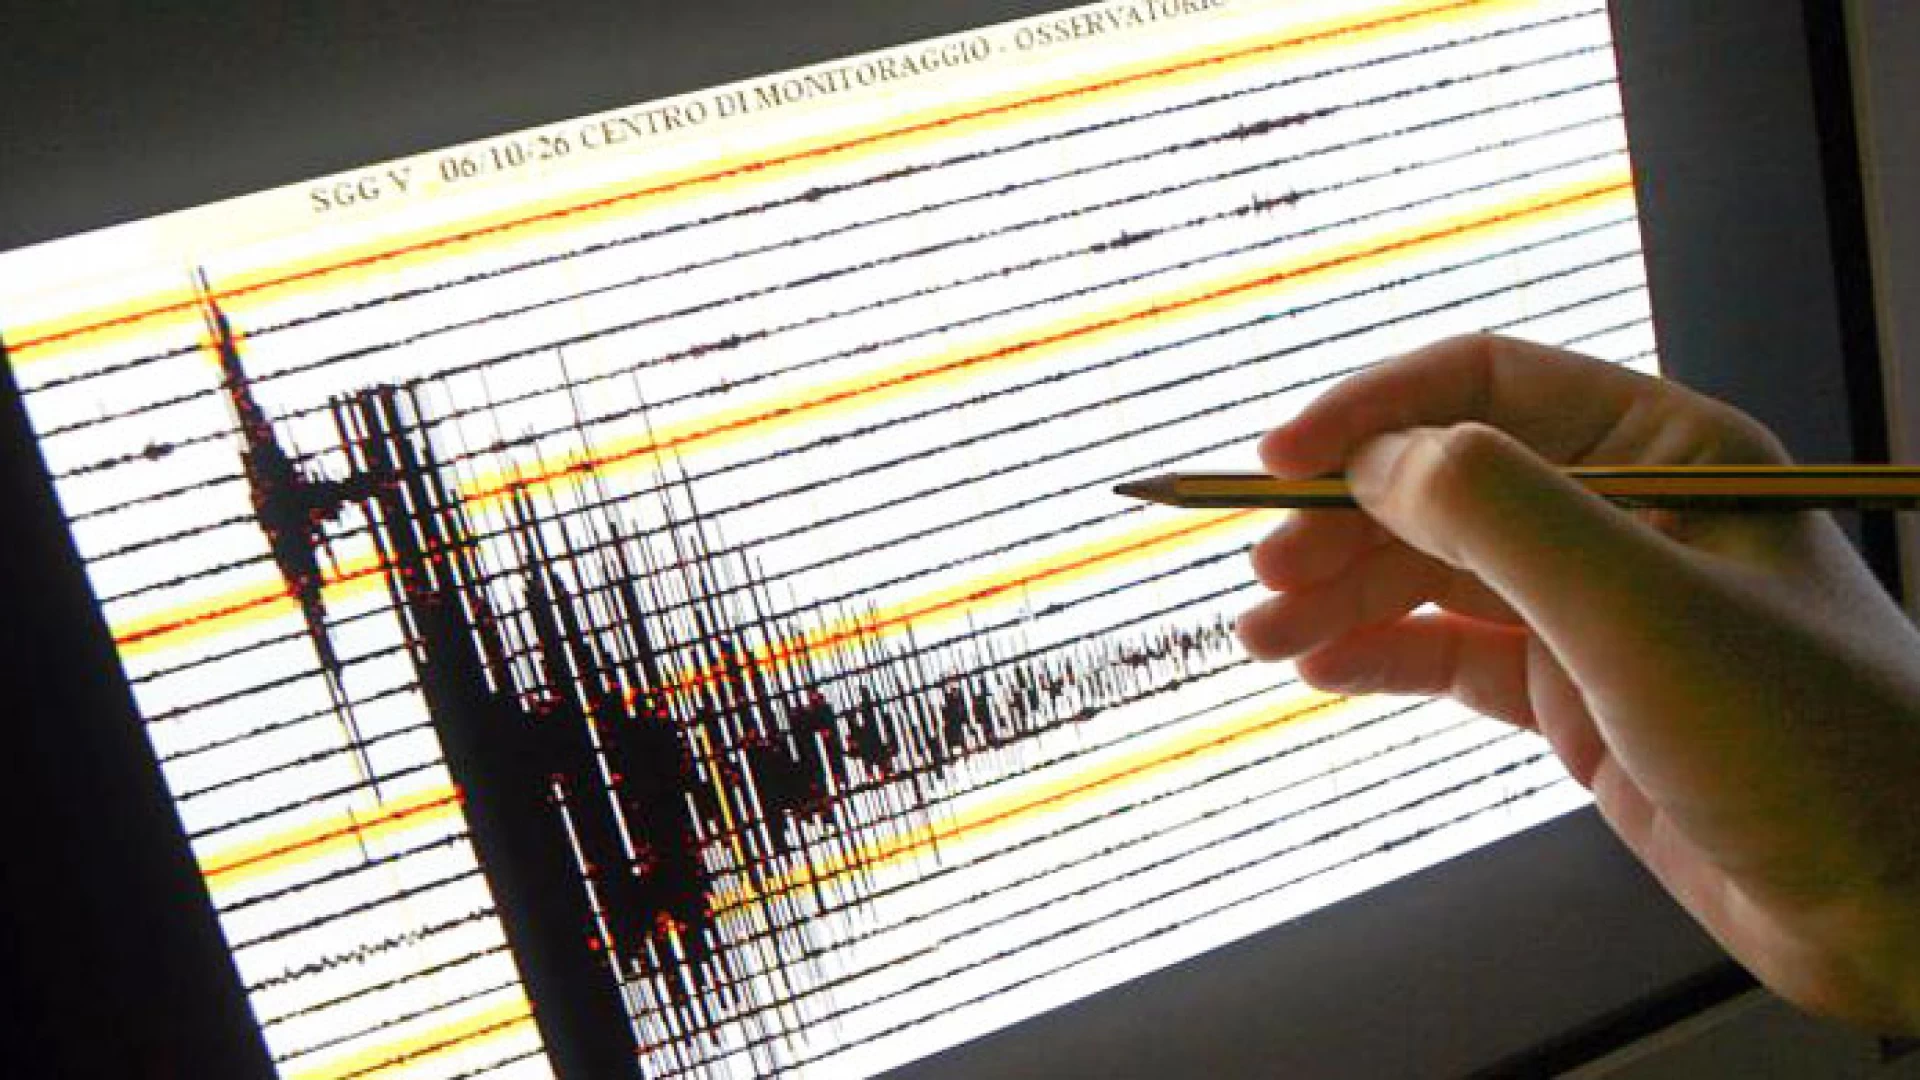 Forte scossa di terremoto in Basso Molise , 4.7 con epicentro Montecilfone. Non ci dovrebbero essere danni.